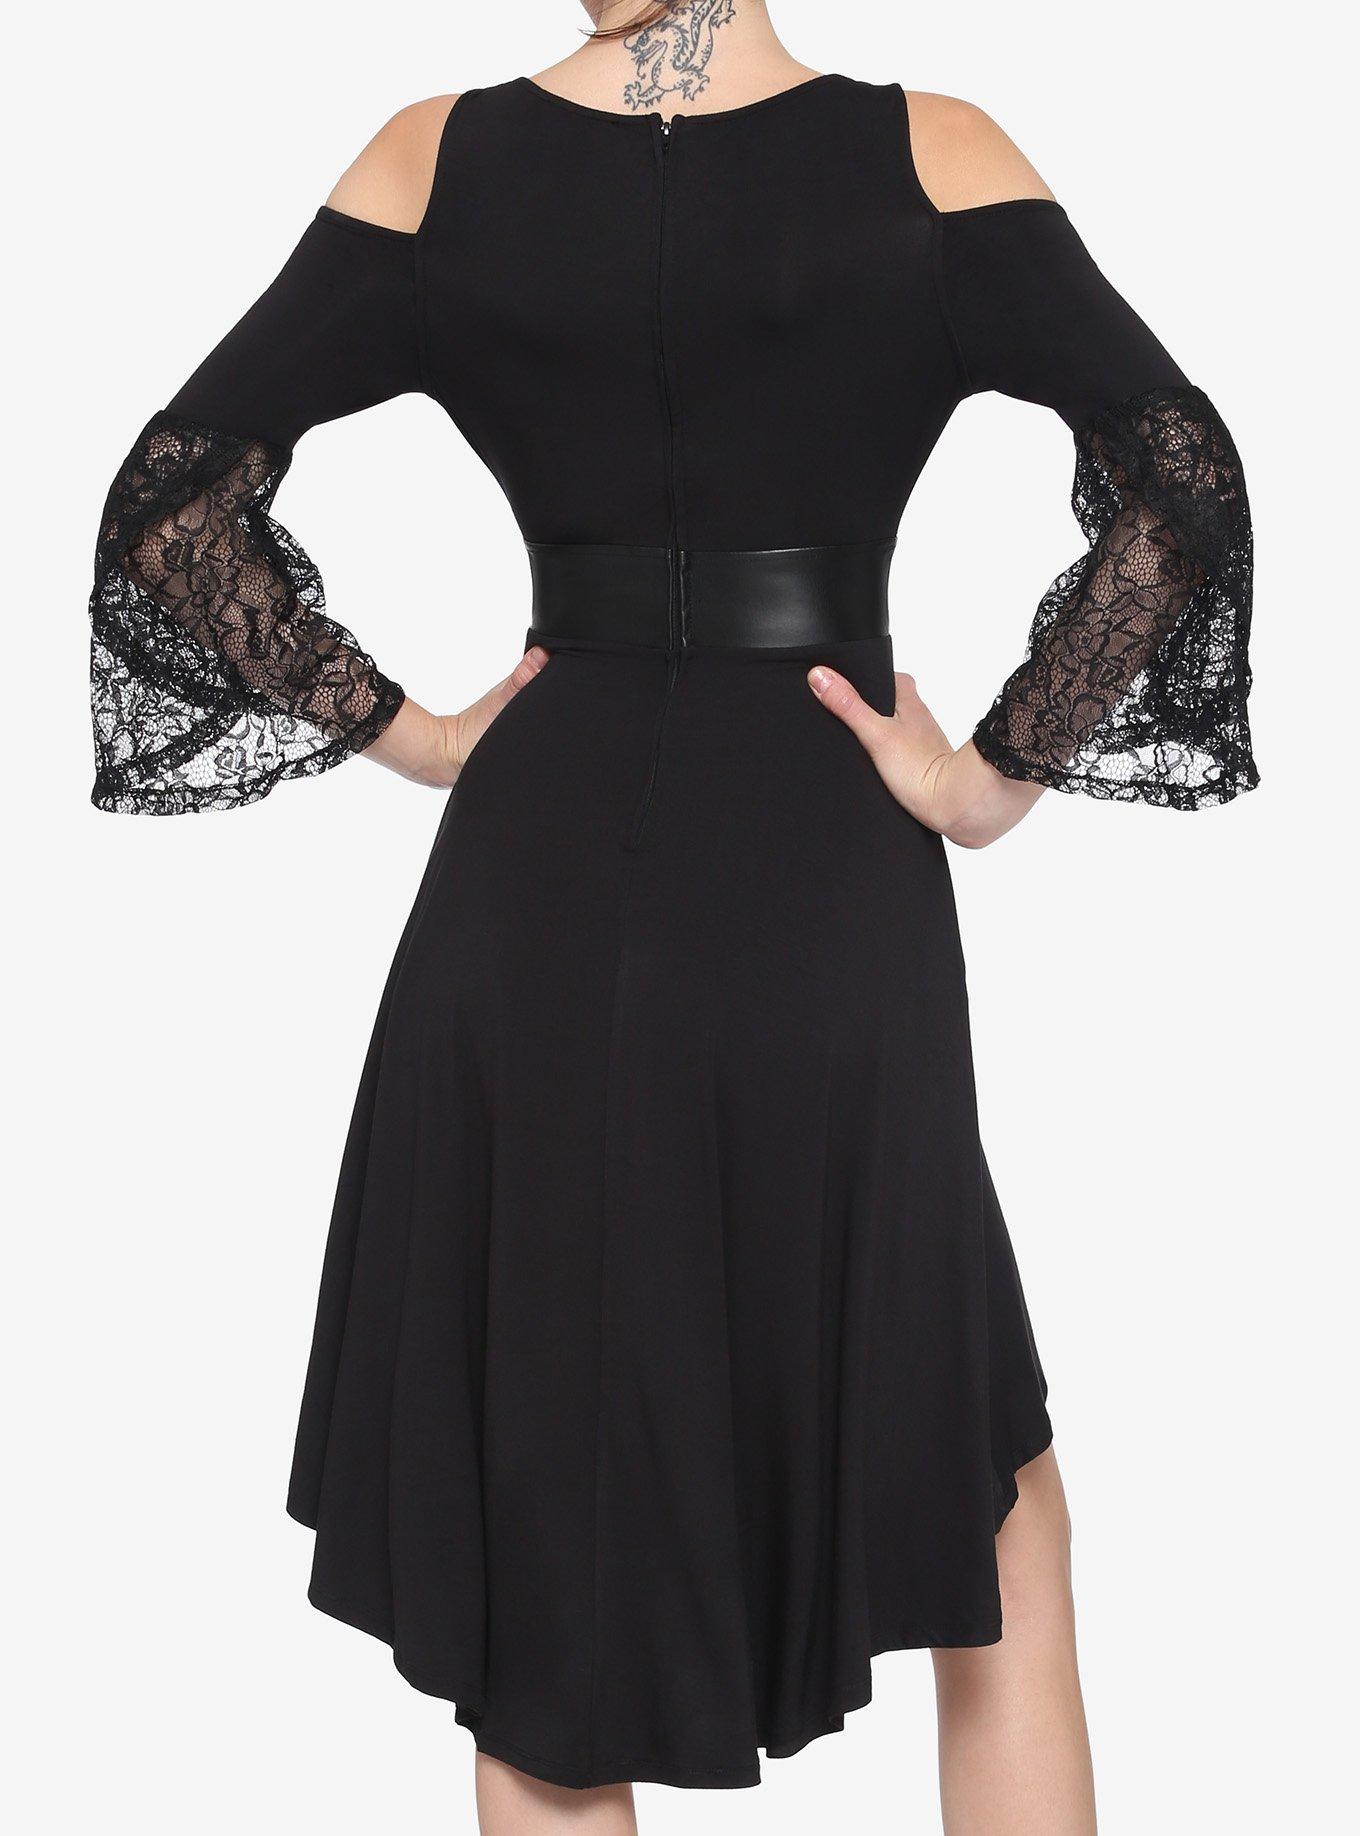 Black Lace Cold Shoulder Hi-Low Dress, BLACK, alternate